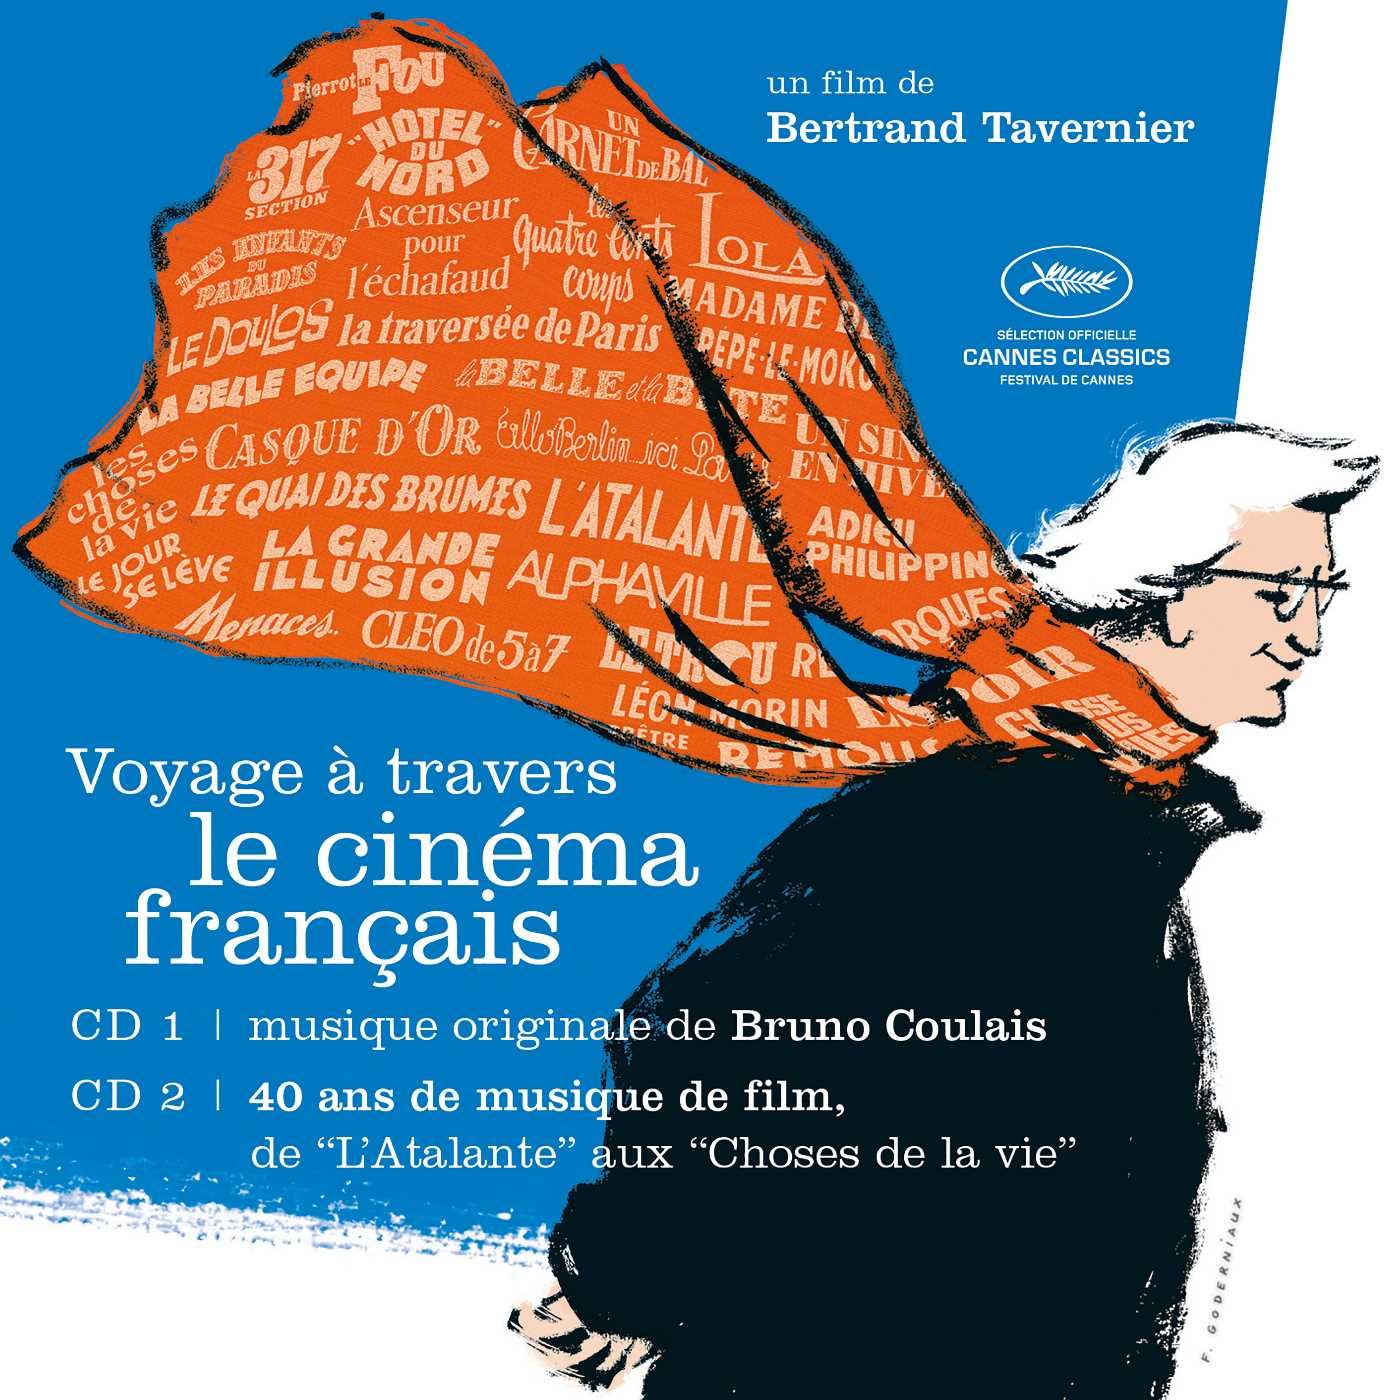 Voyage a travers les cinema français